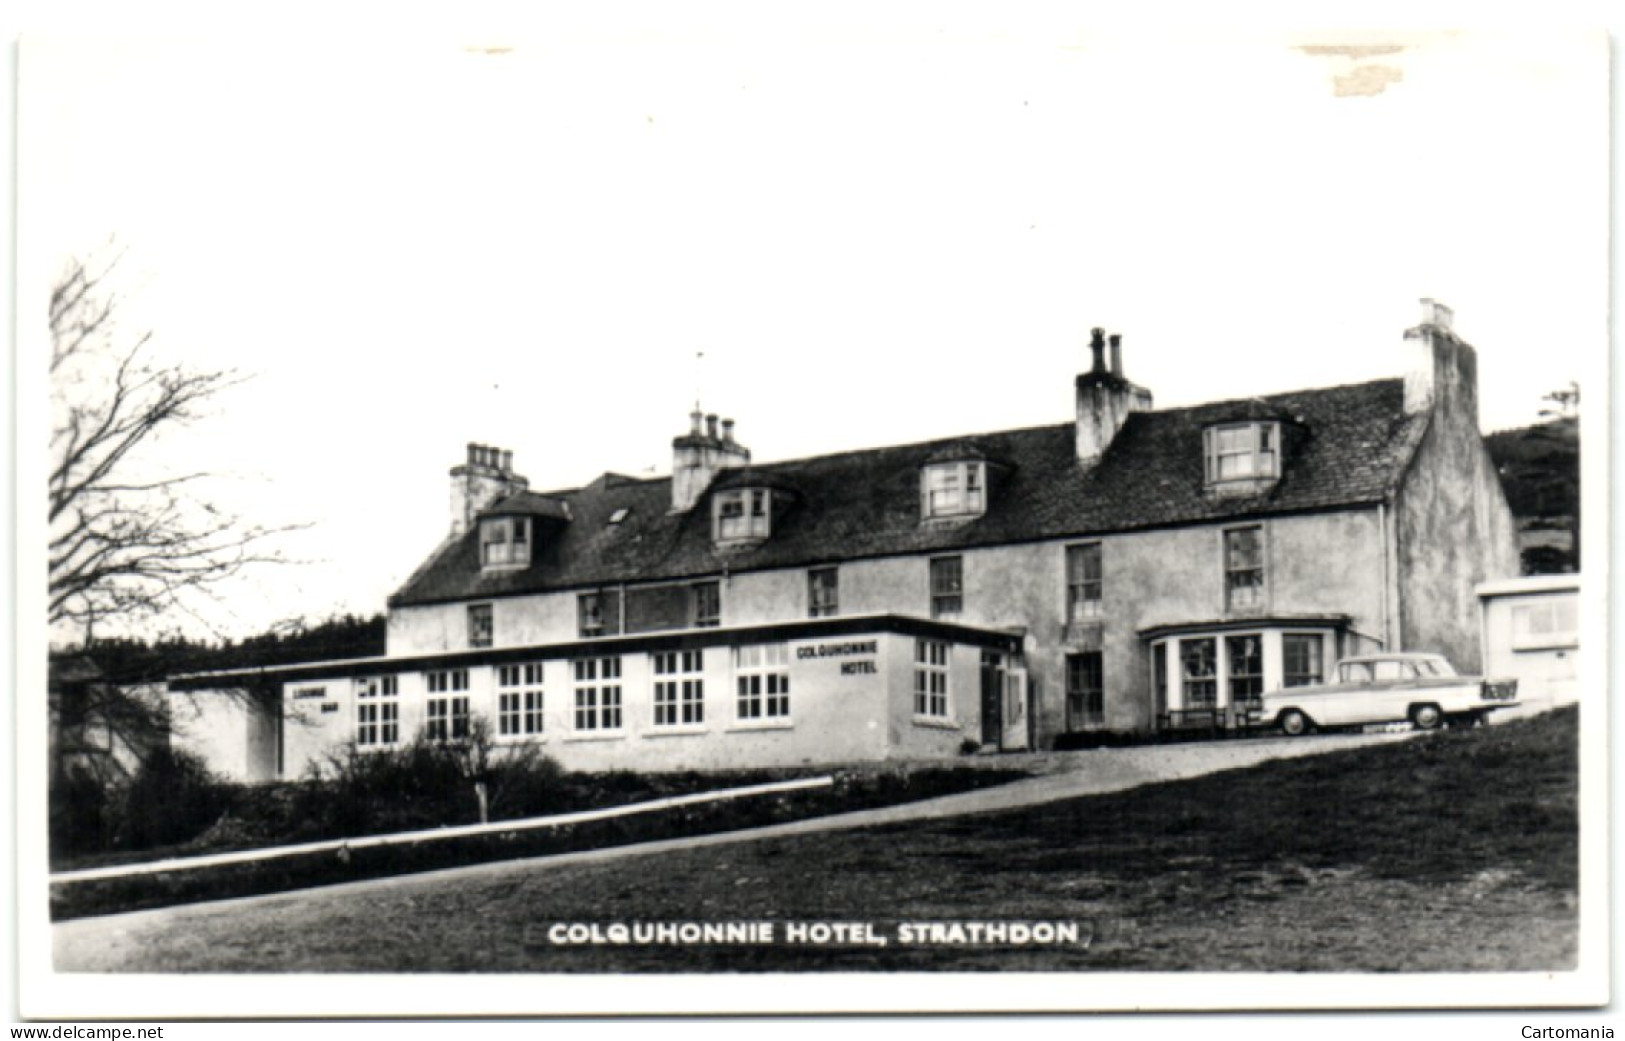 Colquhonnie Hotel - Strathdon - Aberdeenshire